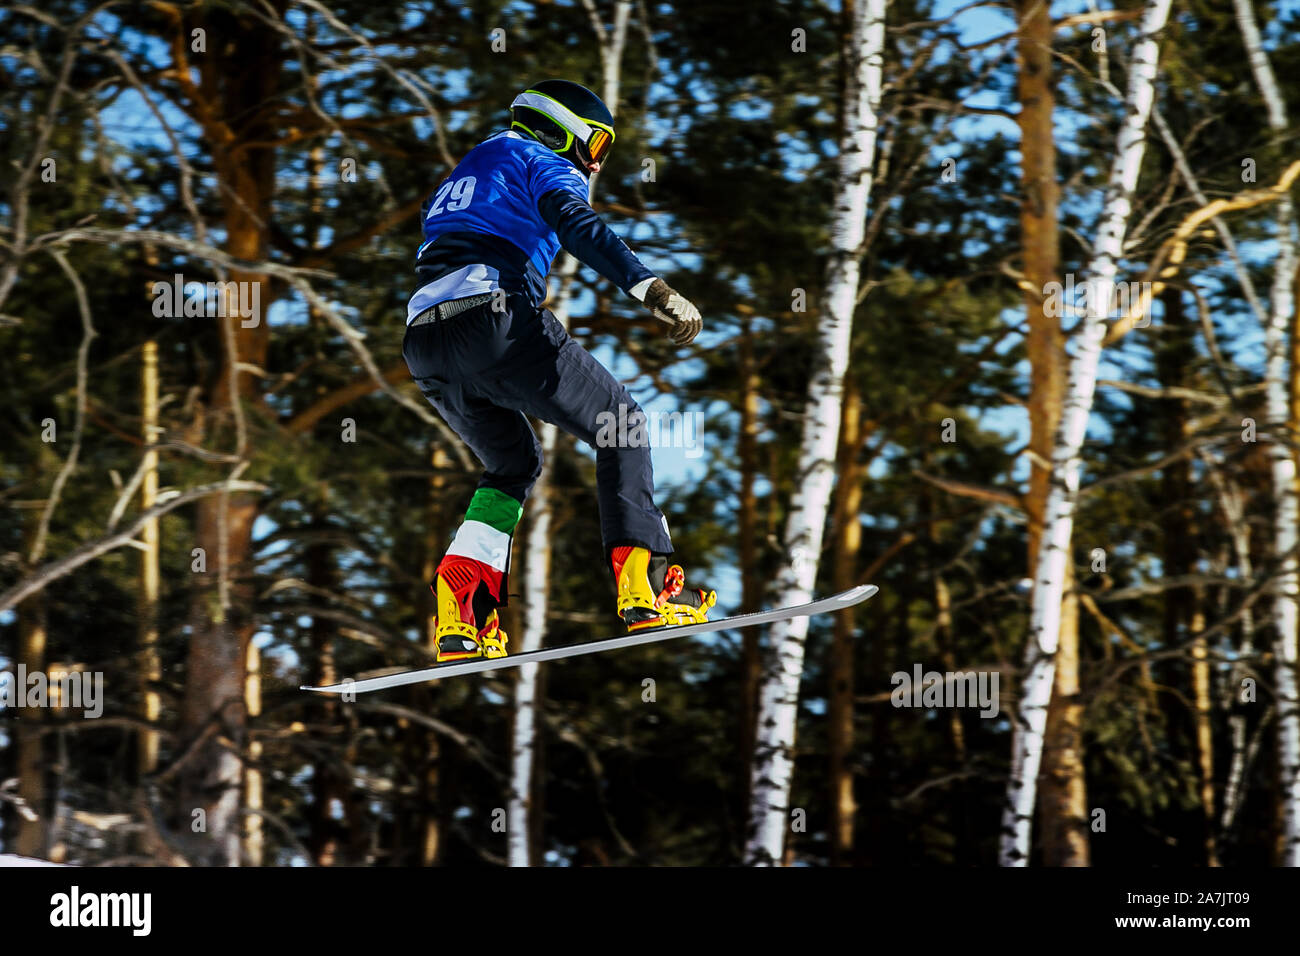 Athlète italien snowboarder jump compétition boardercross Banque D'Images